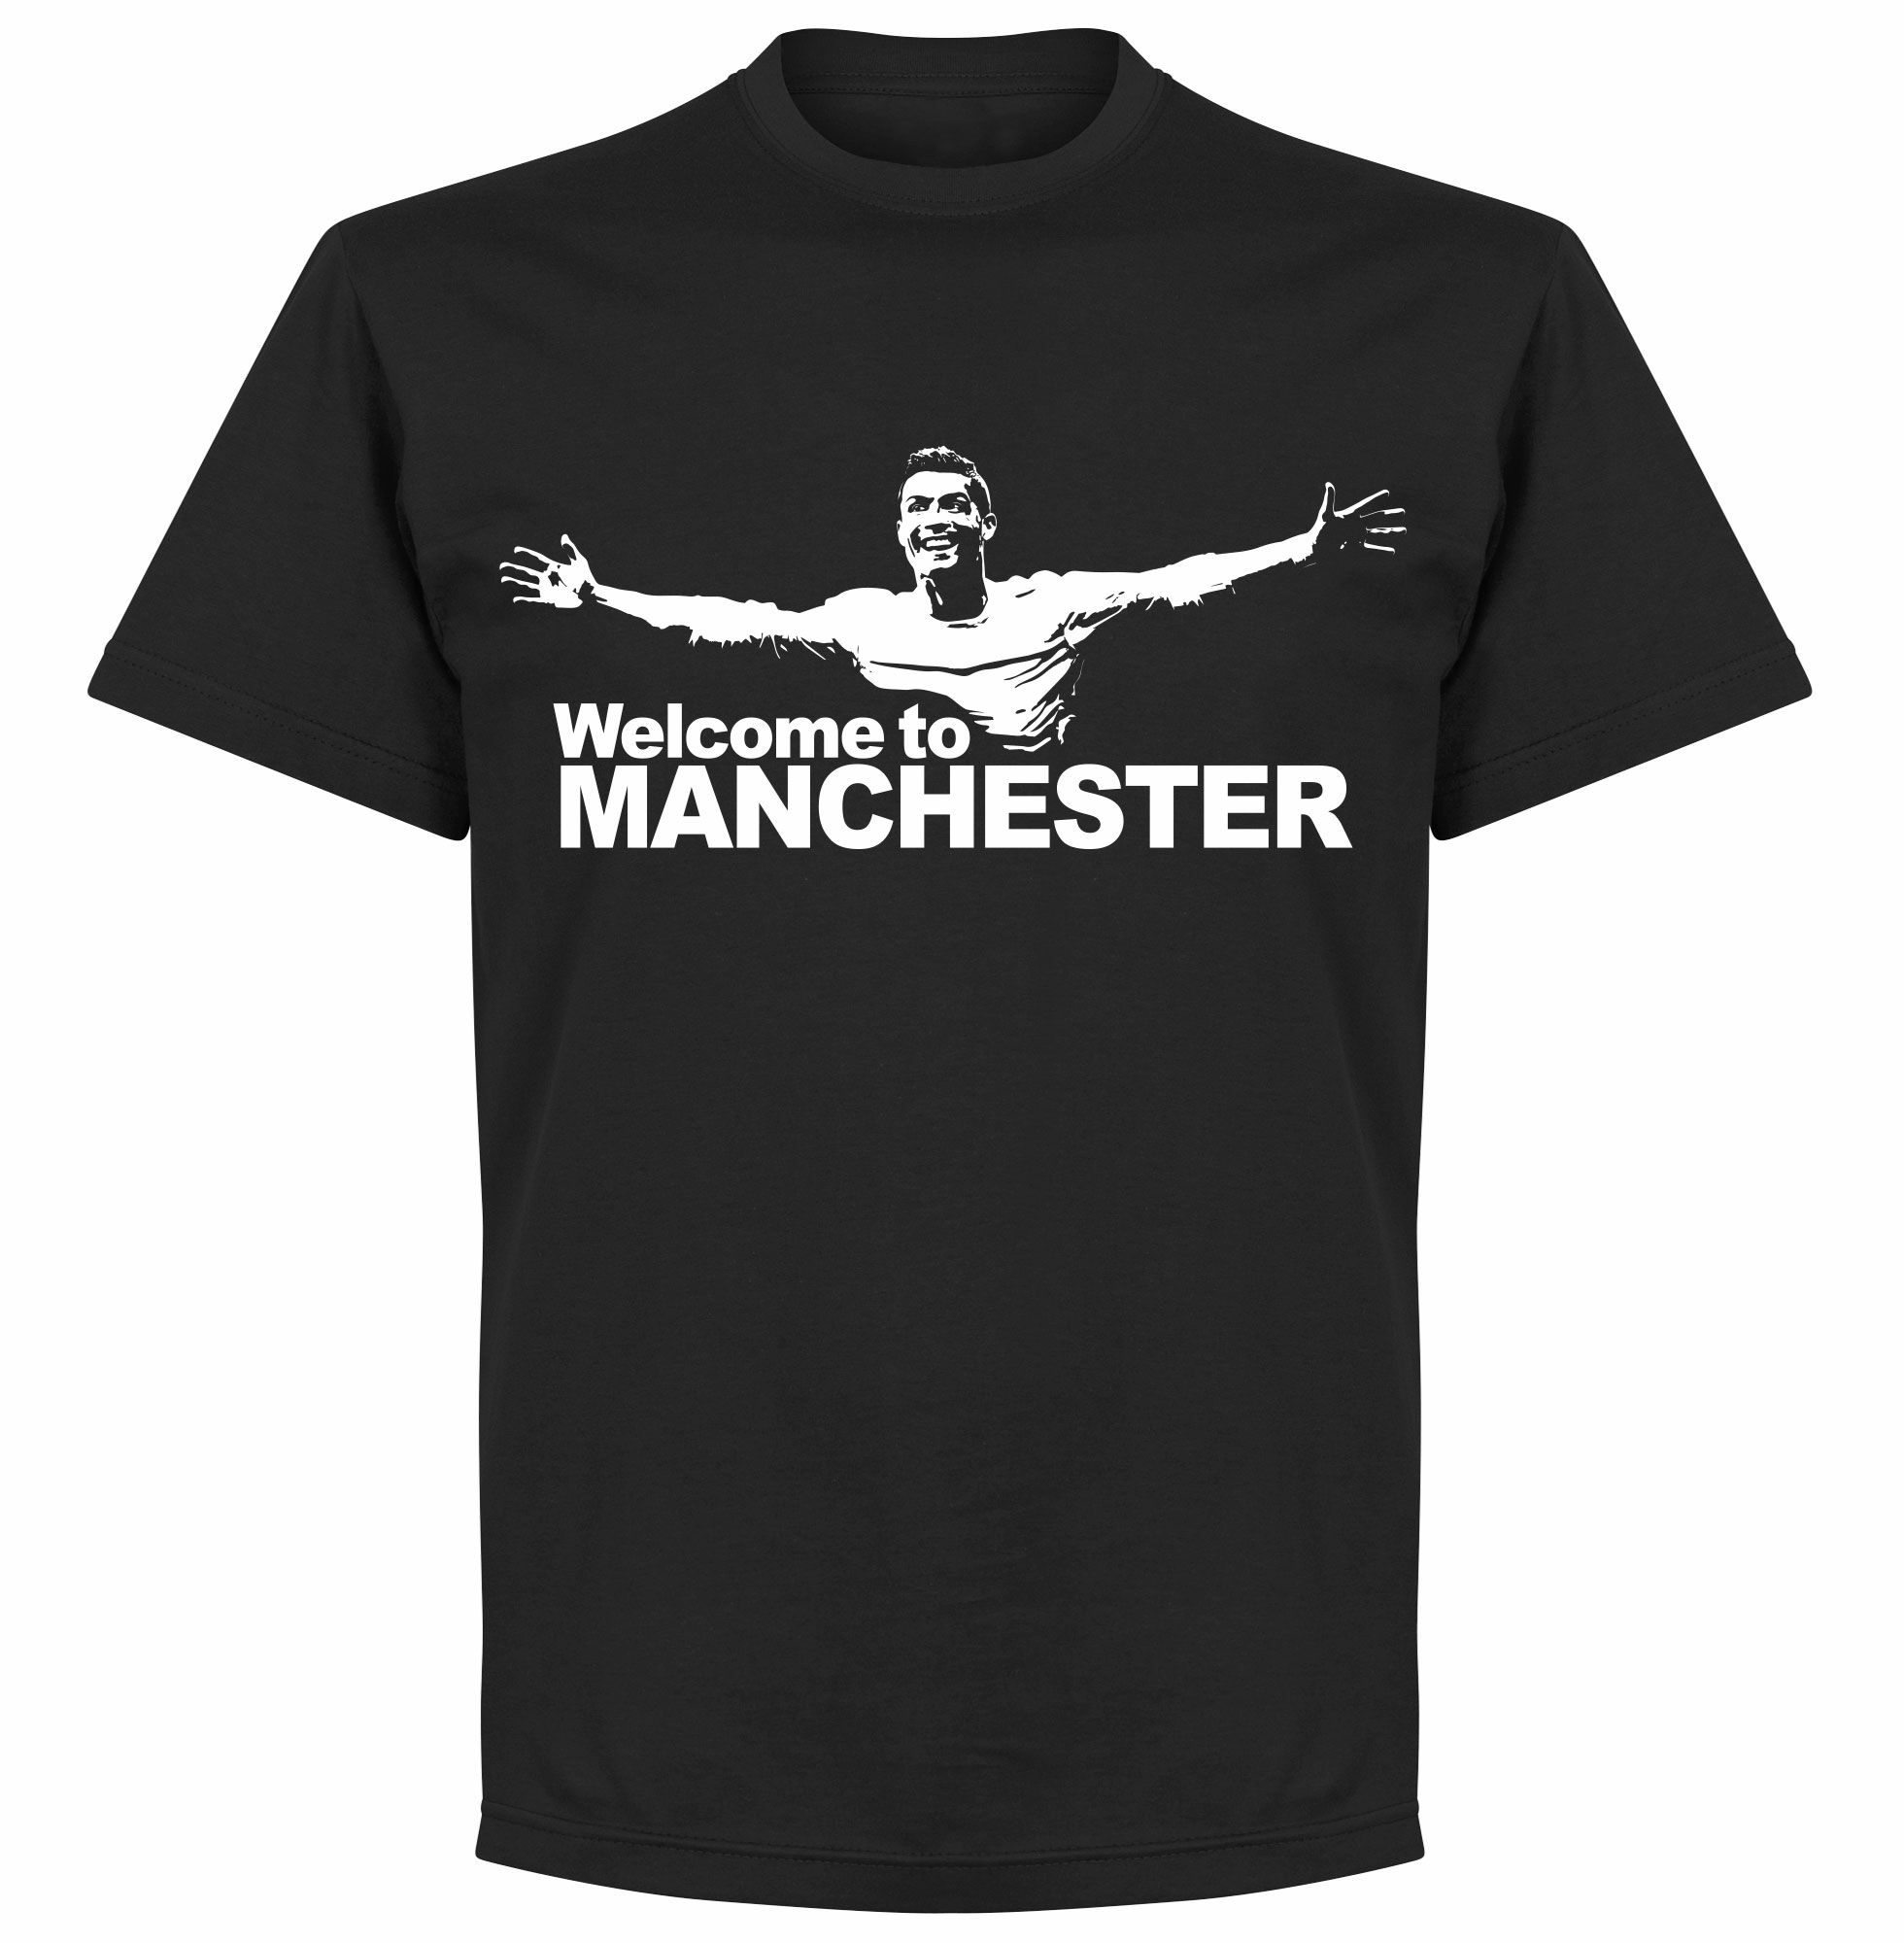 Tričko "Welcome to Manchester" dětské